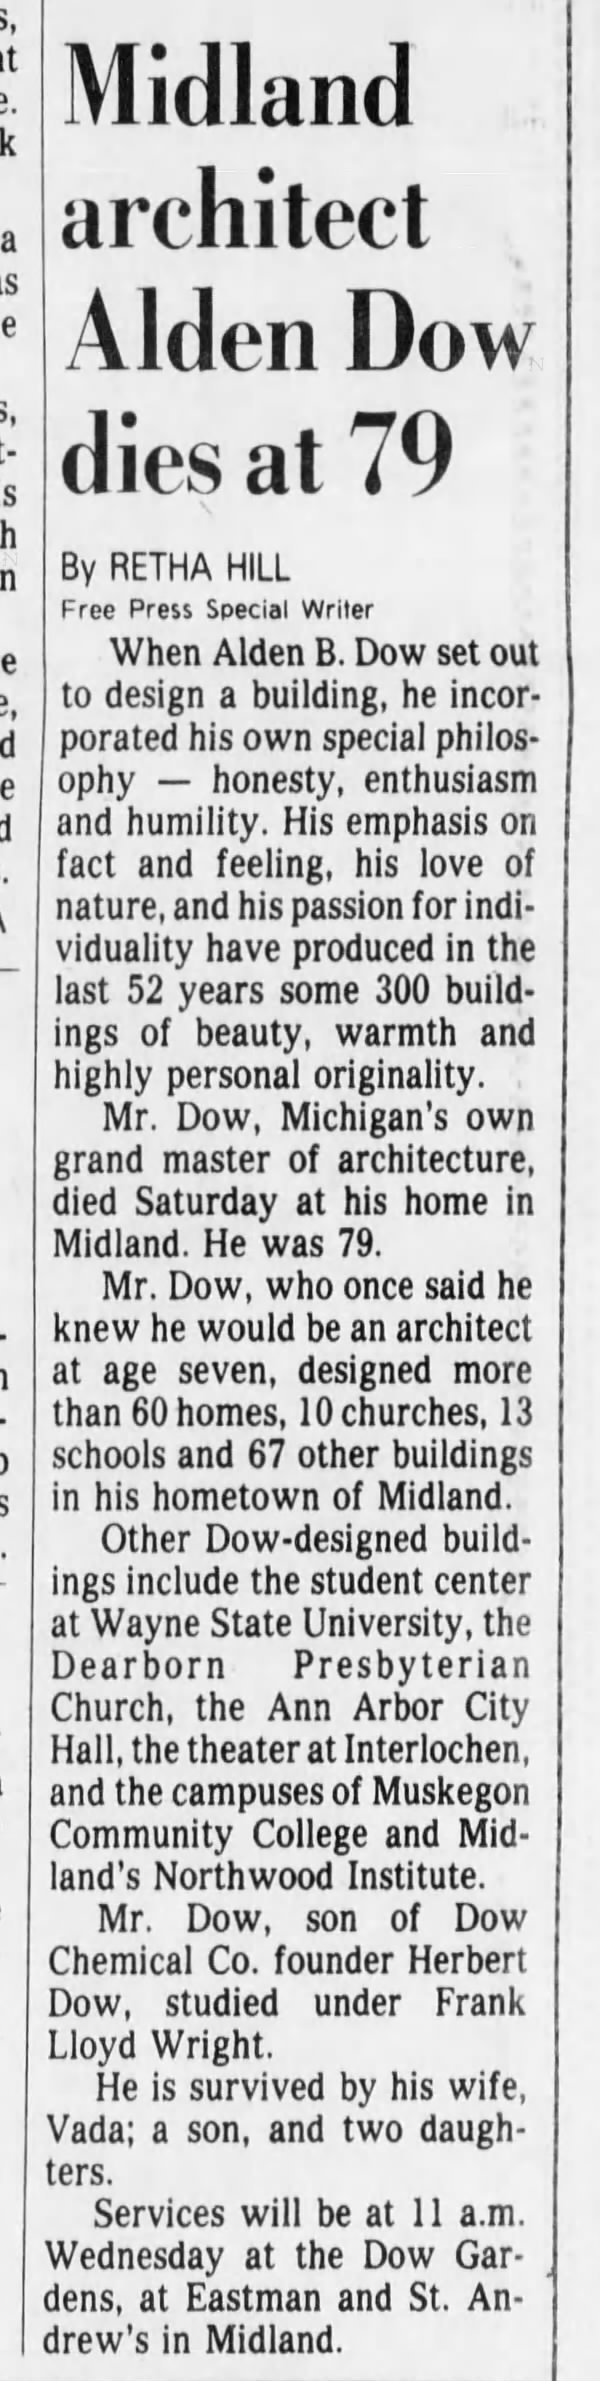 Midland architect Alden Dow dies at 79